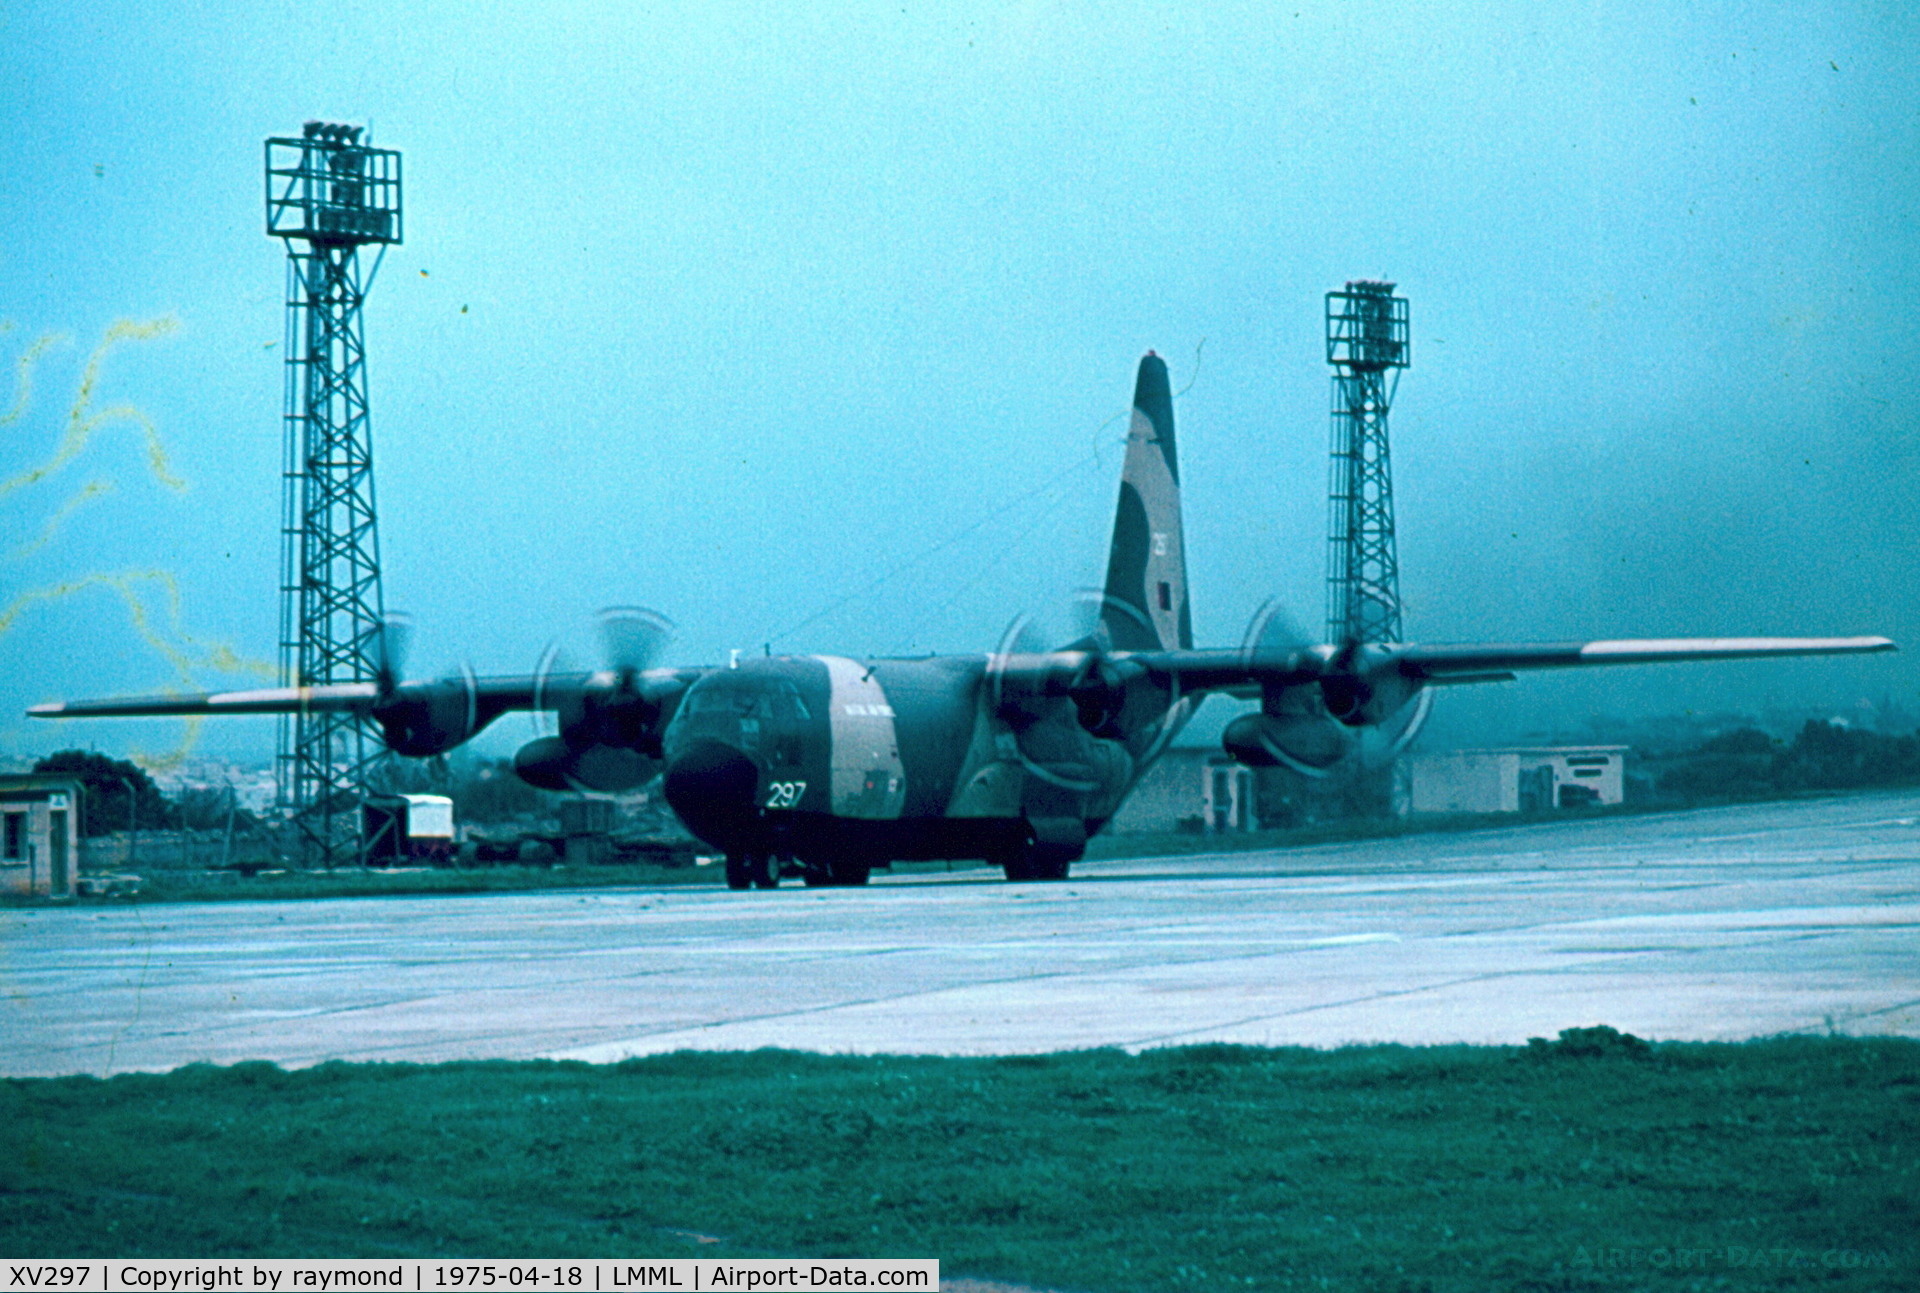 XV297, 1967 Lockheed C-130K Hercules C.1 C/N 382-4263, C130K XV297 RAF